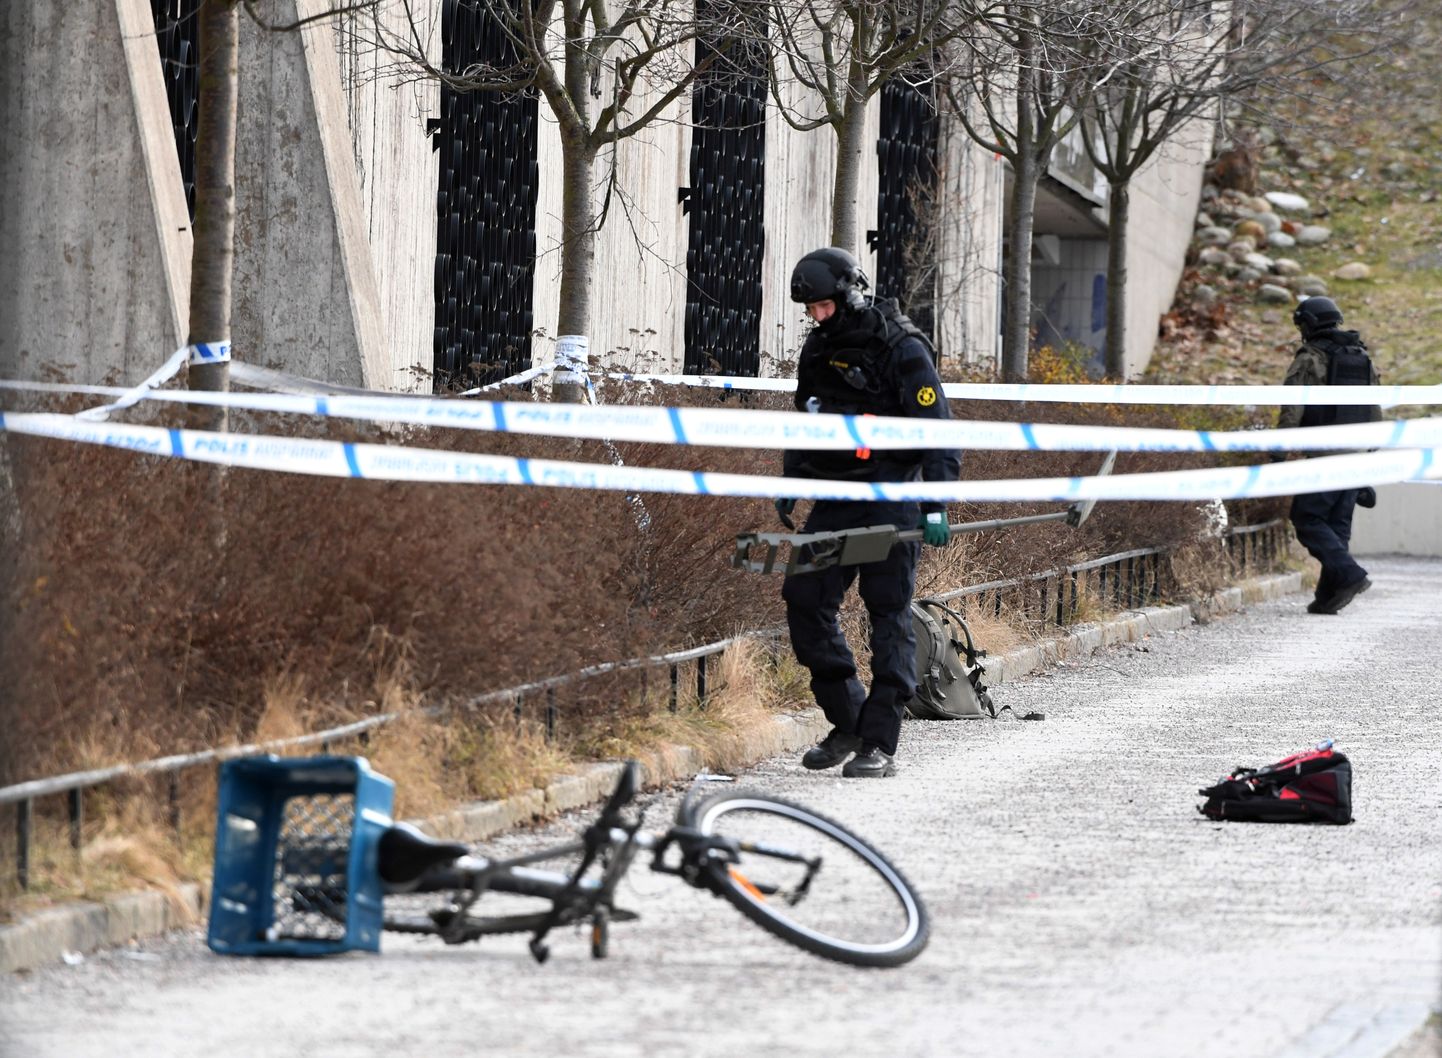 Jaanuaris sai Stockholmis Vårby gårdi metroojaama juures granaadiplahvatuses surma 63-aastane mees, kes tänaval vedelenud relva seda mänguasjaks pidades üles korjas.